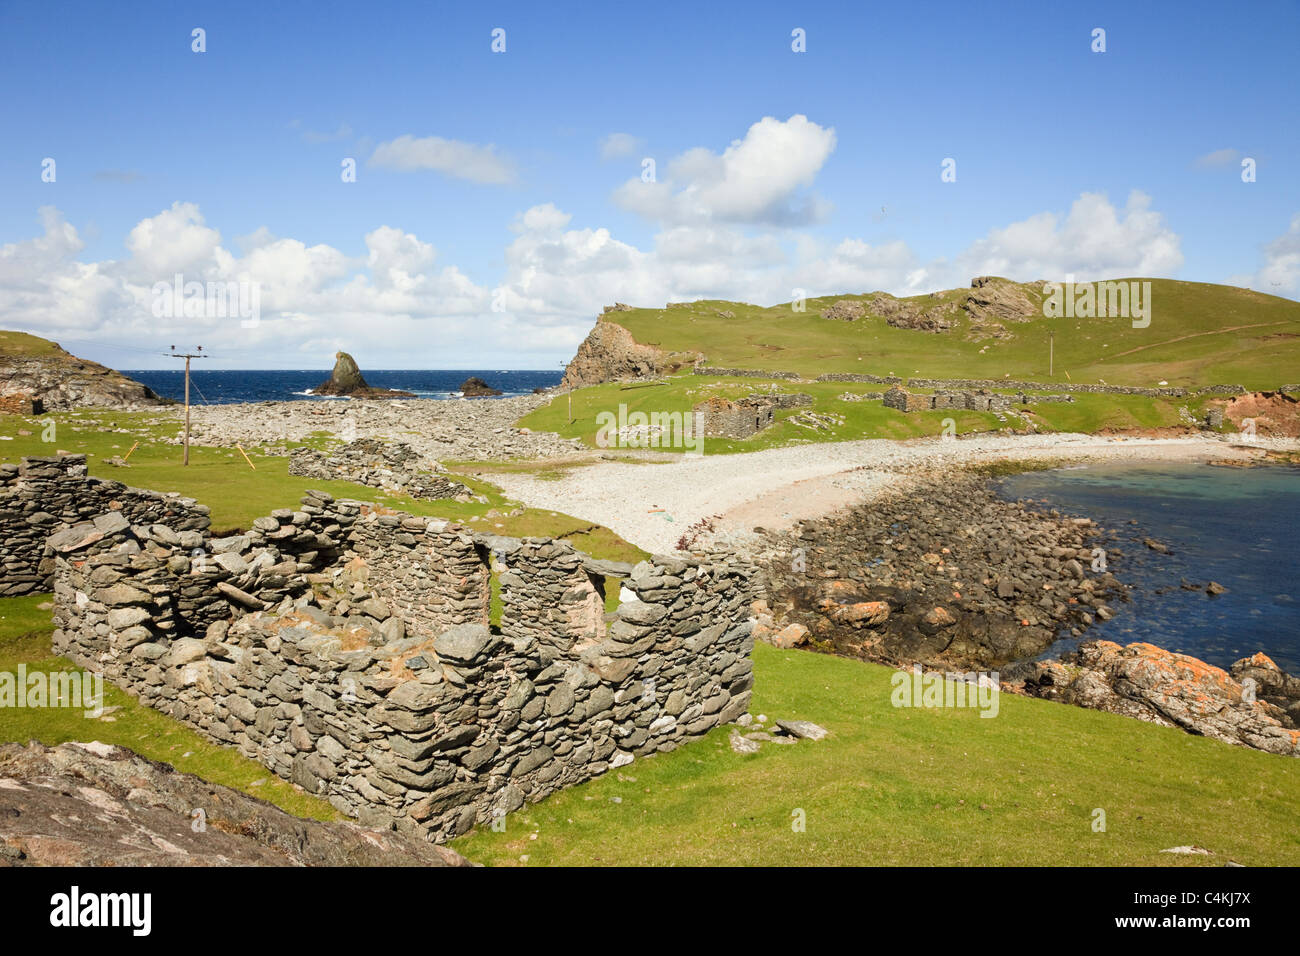 Fethaland, Northmavine, Shetland, Scotland, UK. Les apparaux de pêche lodges dans la baie à l'ancien site du patrimoine station Haaf Banque D'Images